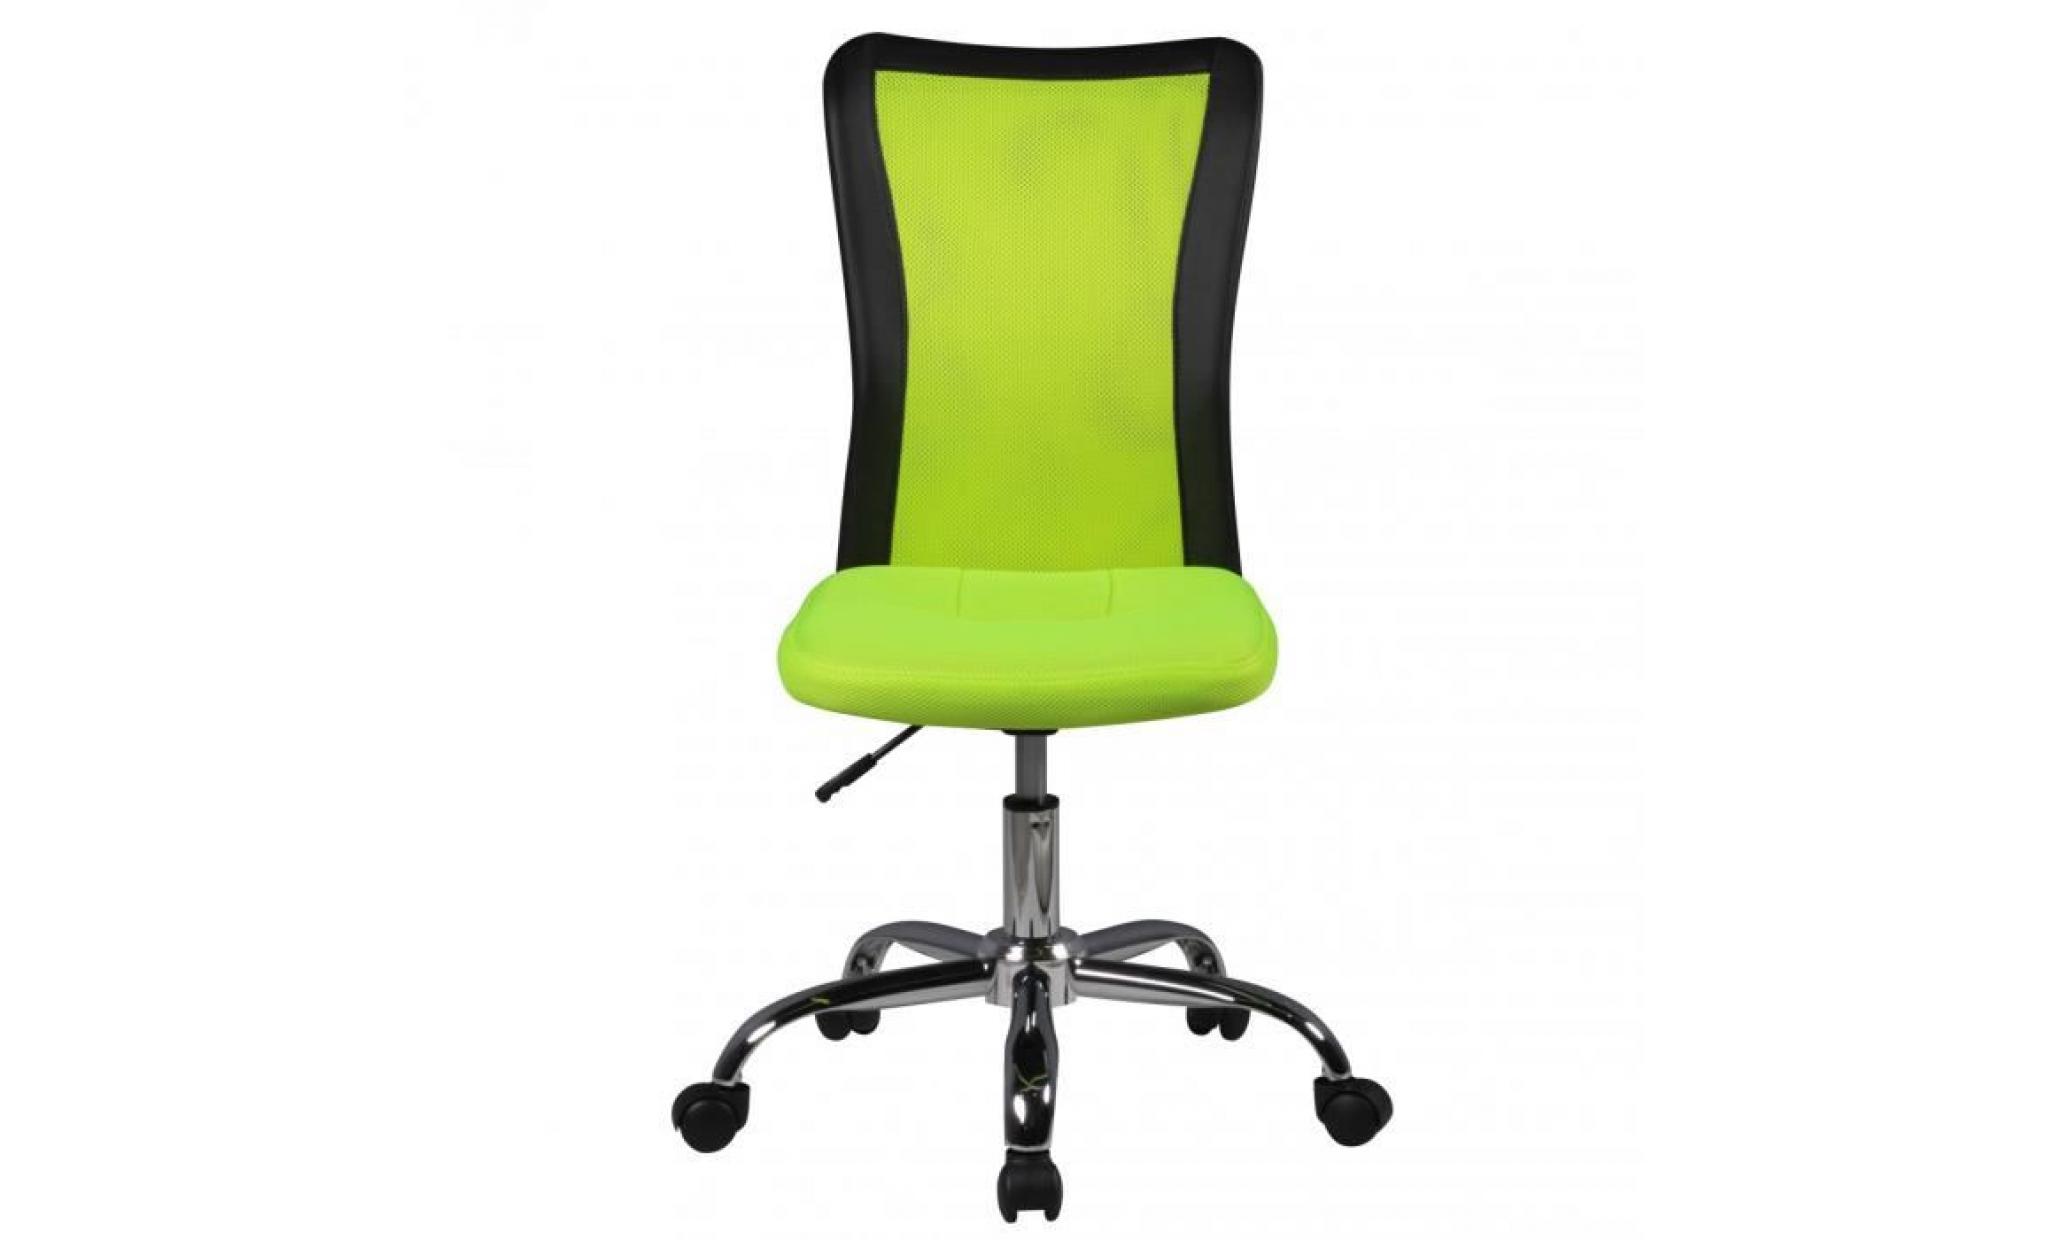 amstyle chaise de bureau enfants lukas vert pour les enfants de 6 avec dossier et roulettes de sol souples chaise jeunesse pas cher